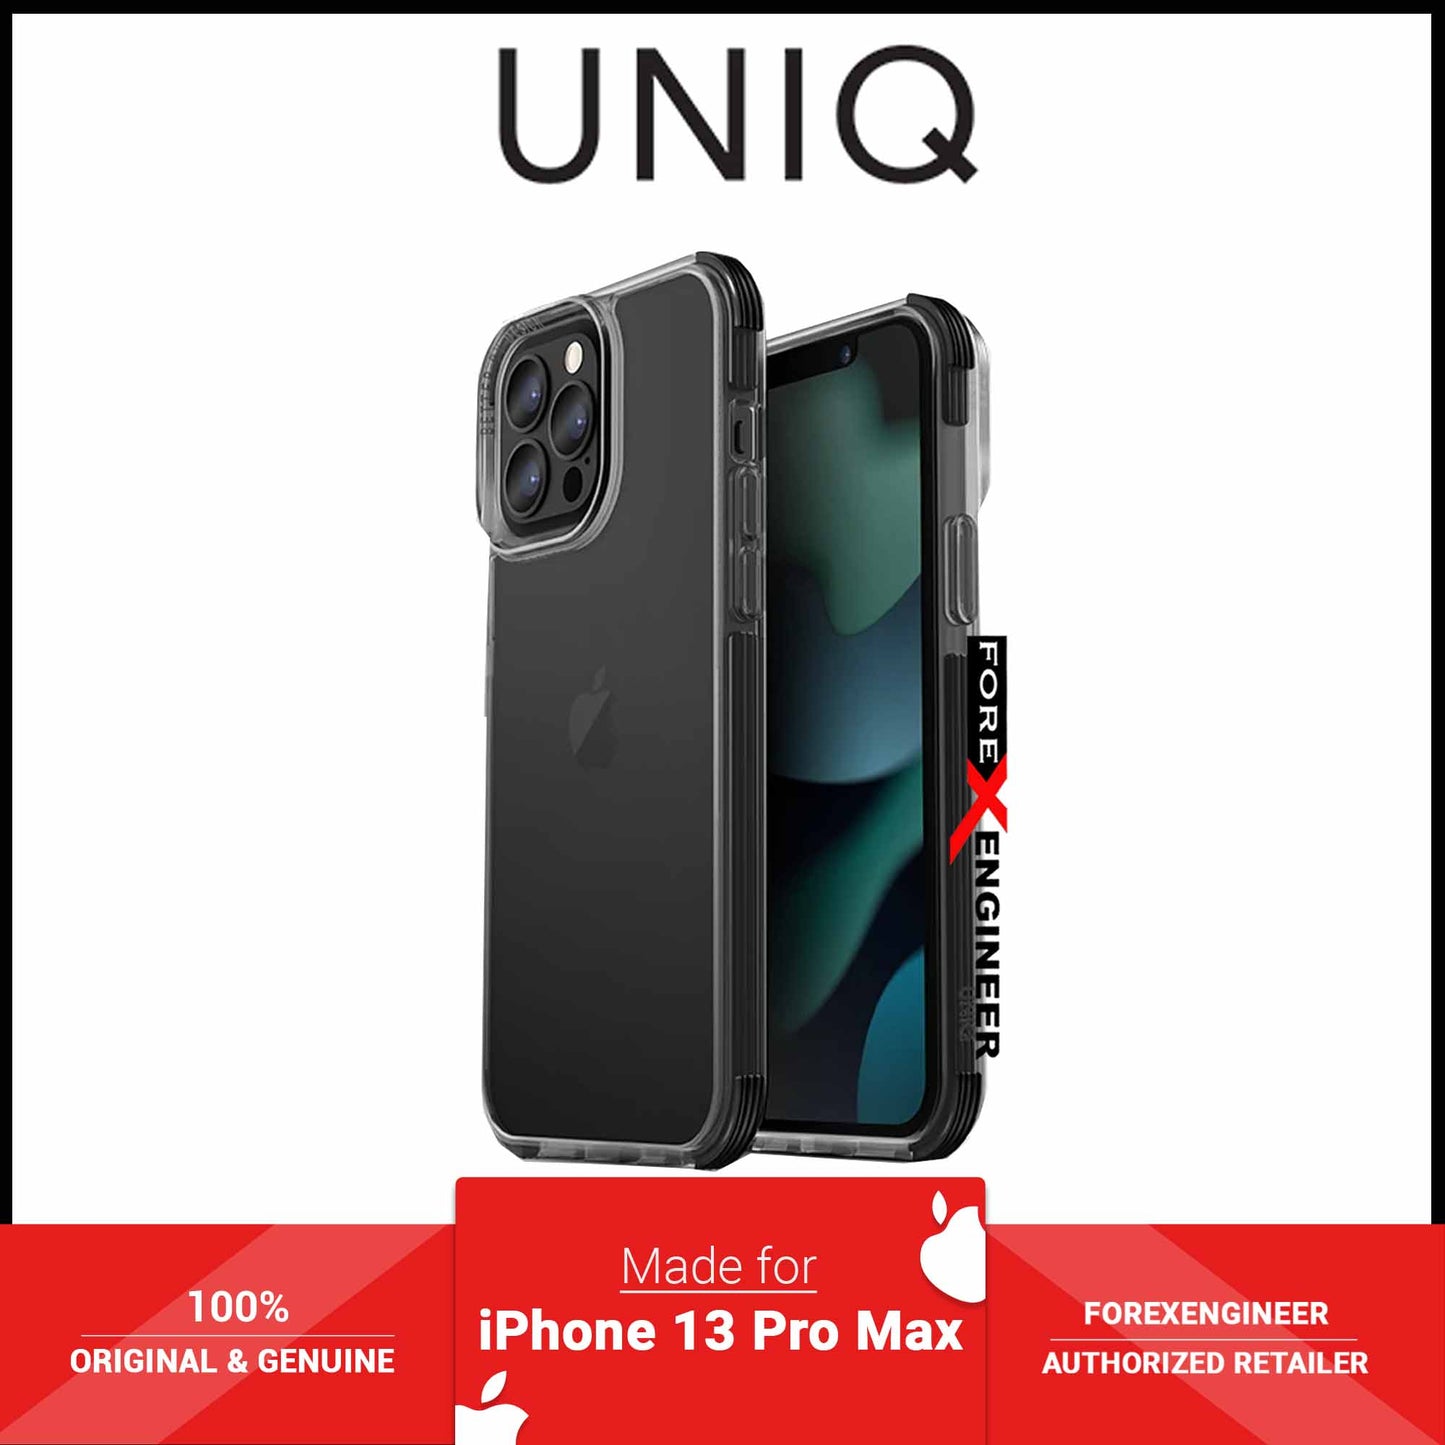 UNIQ Combat Case for iPhone 13 Pro Max 6.7" 5G - Black (Barcode: 8886463678008 )